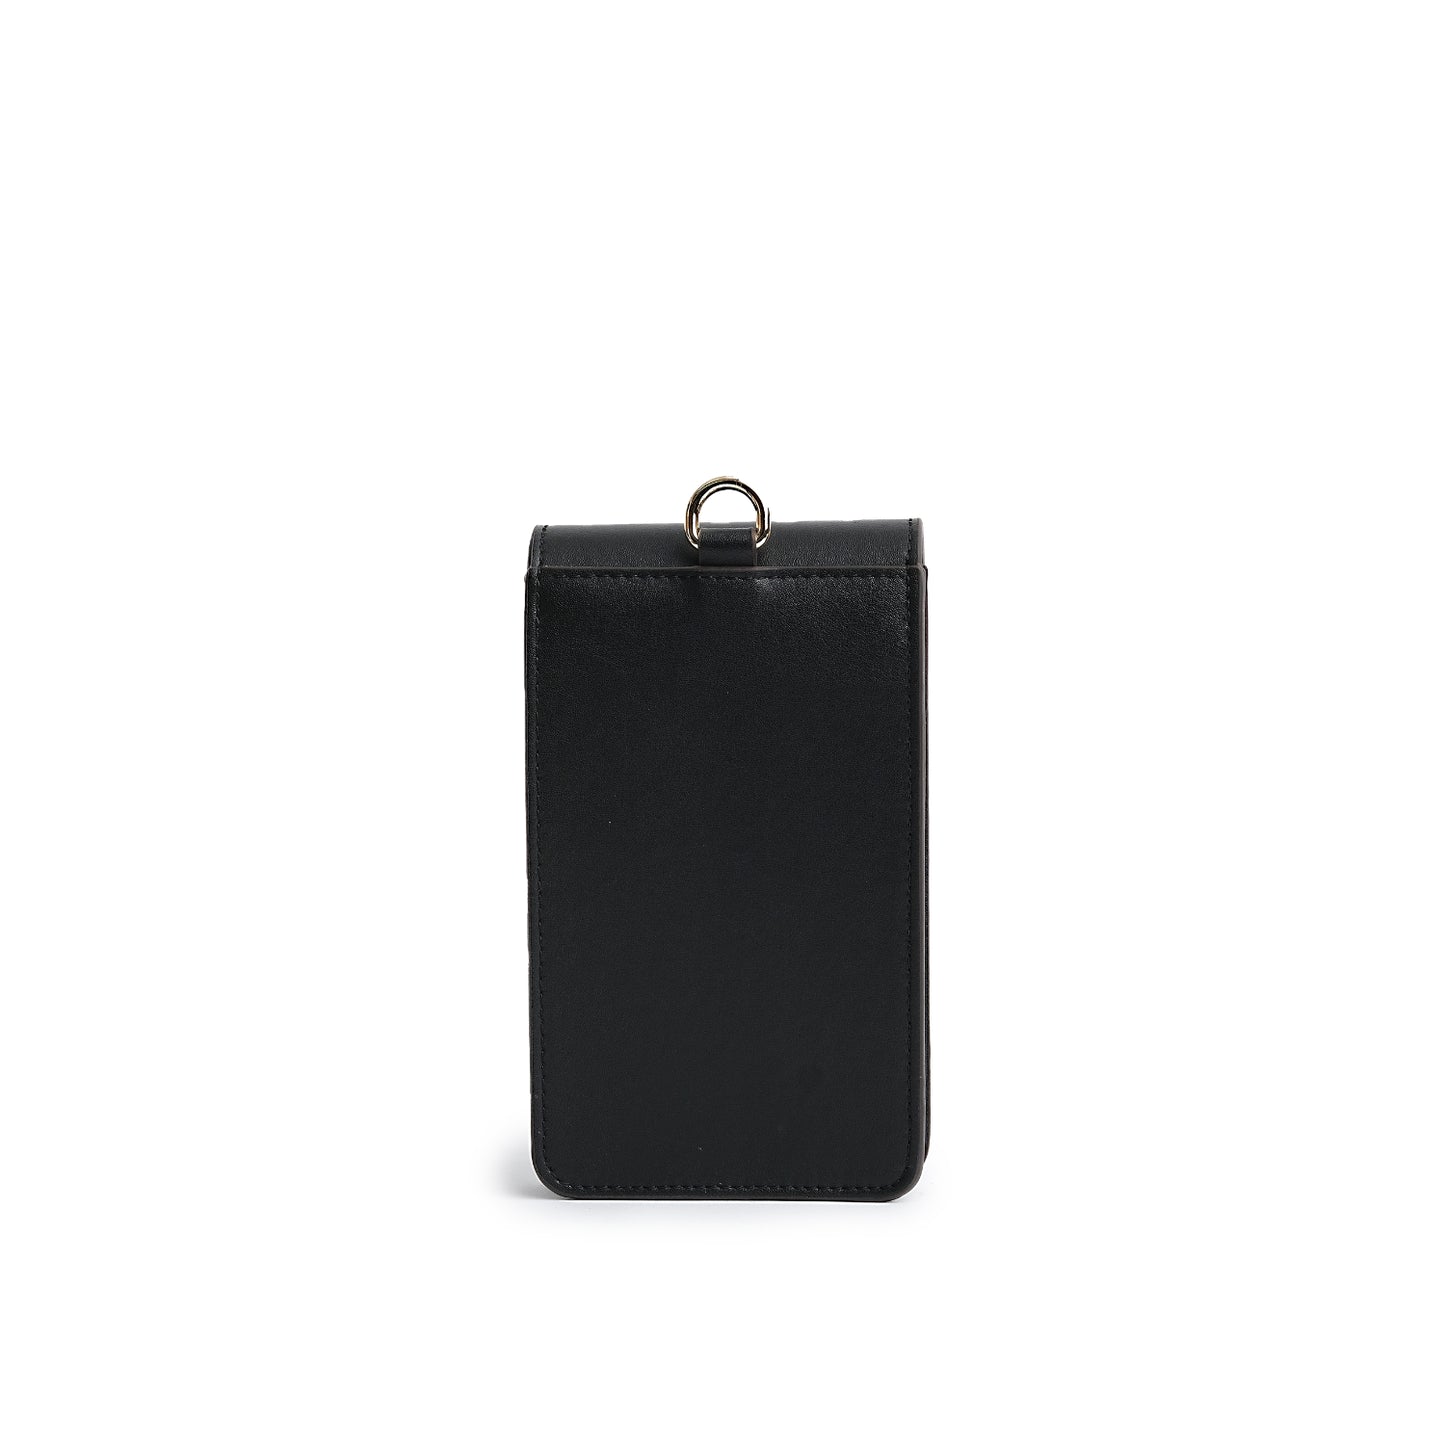 FERO Cactus Leather Phone Bag Black